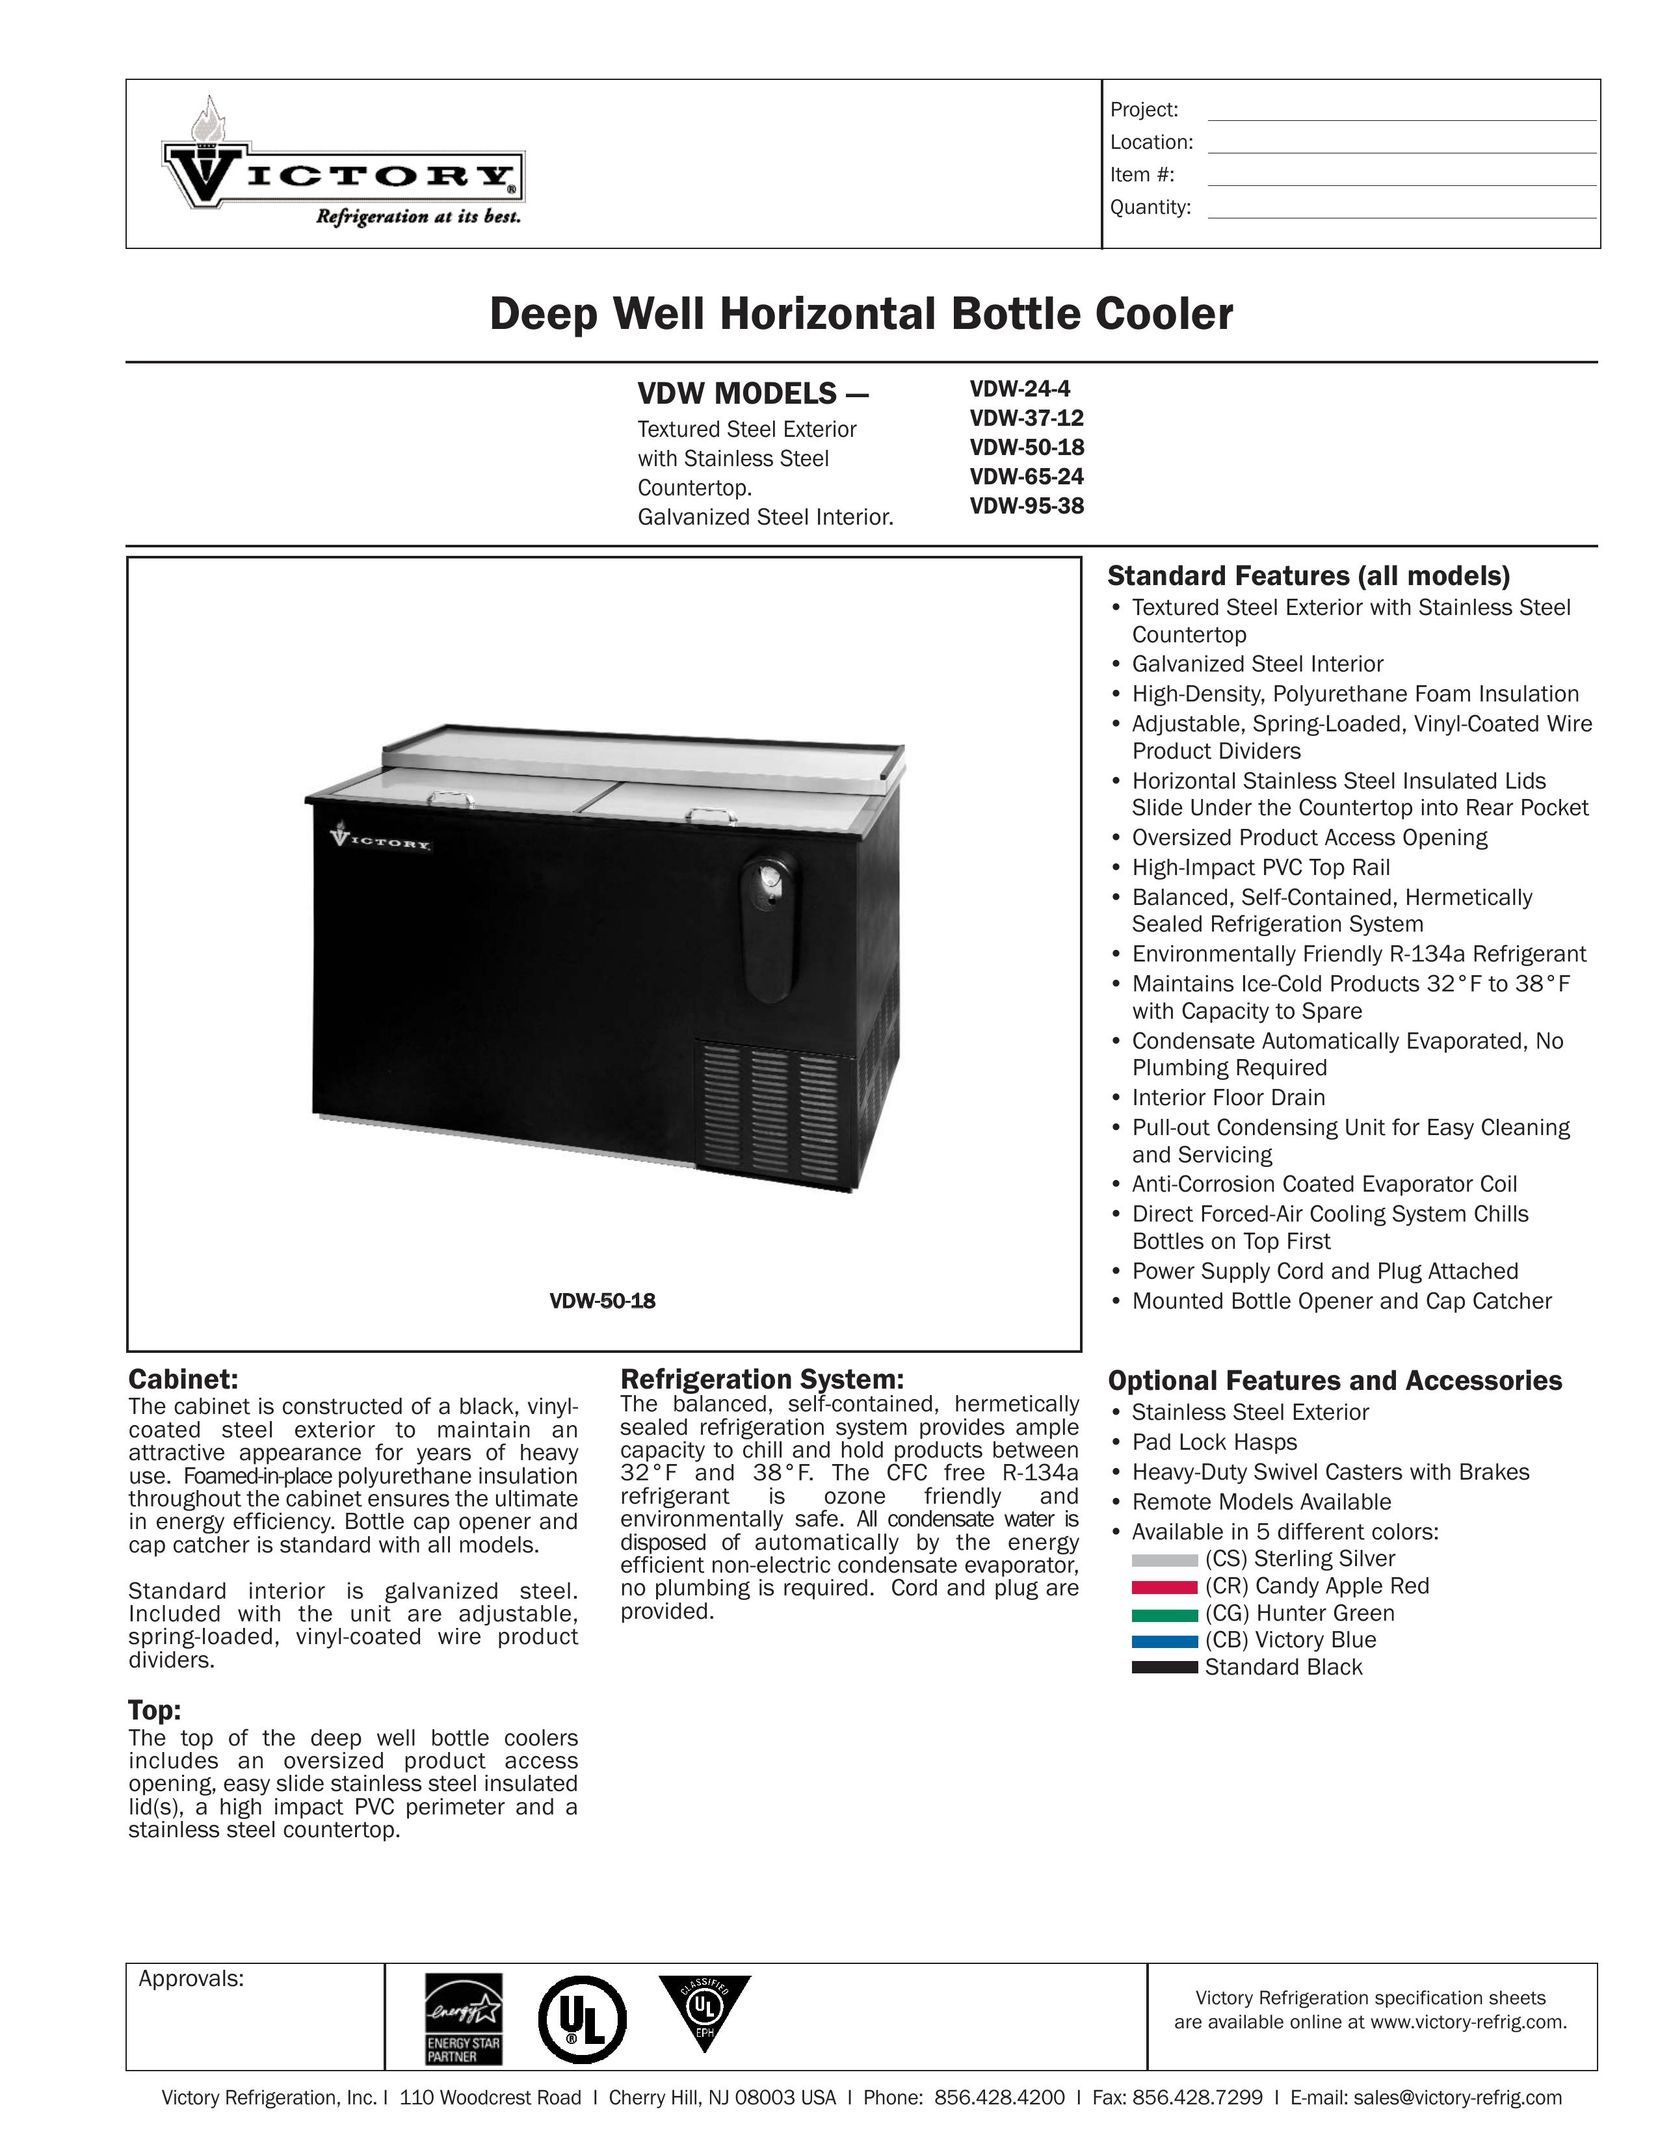 Victory Refrigeration VDW-37-12 Beverage Dispenser User Manual